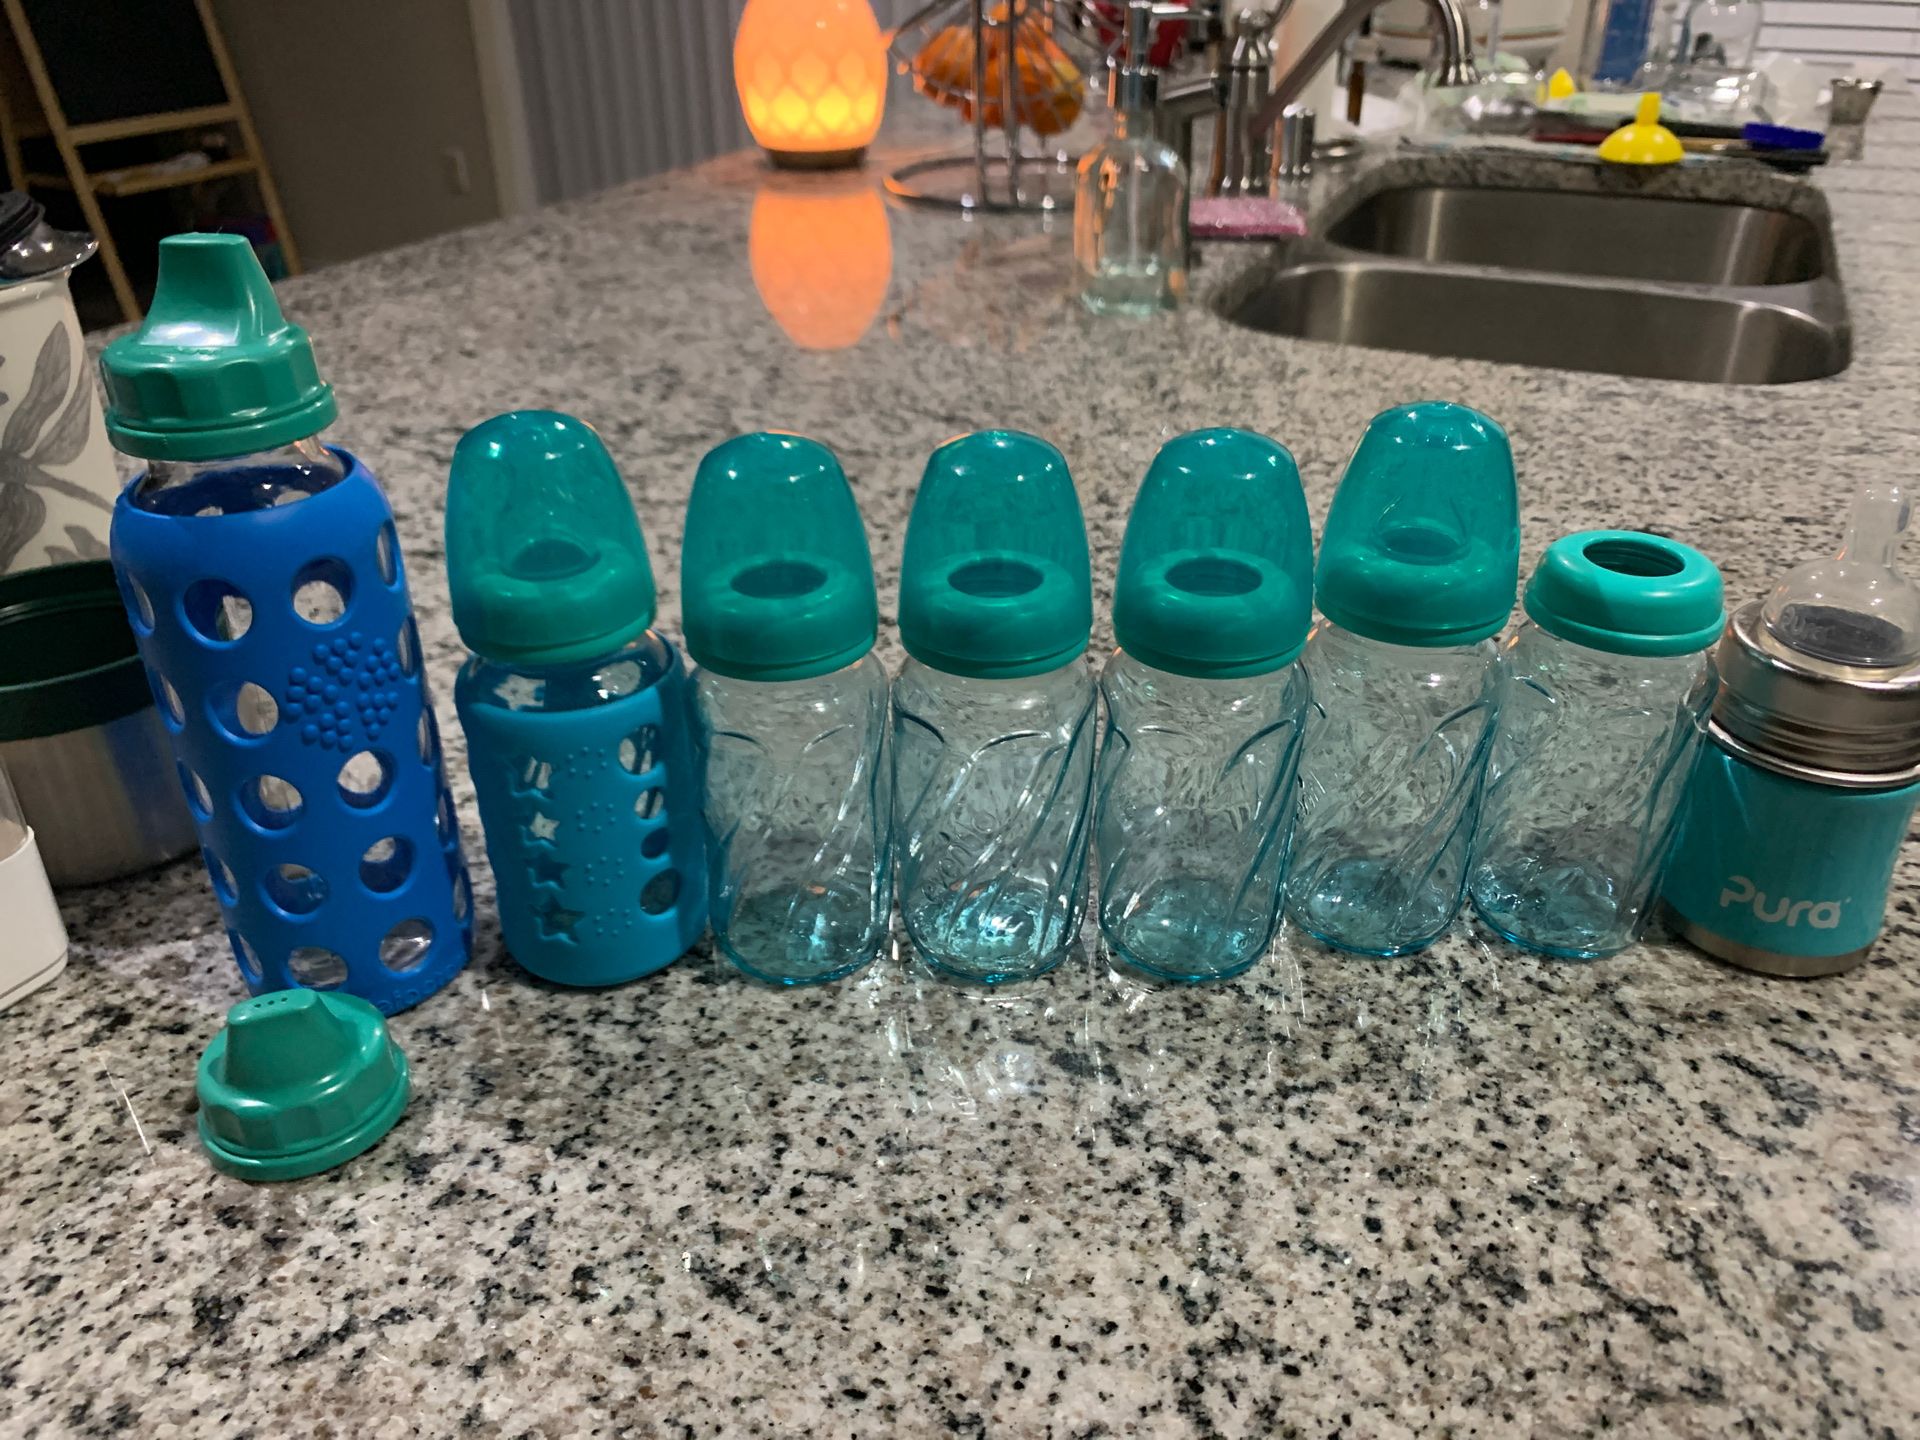 Evenflo 4 oz glass baby bottles + 9 oz life factory glass bottle